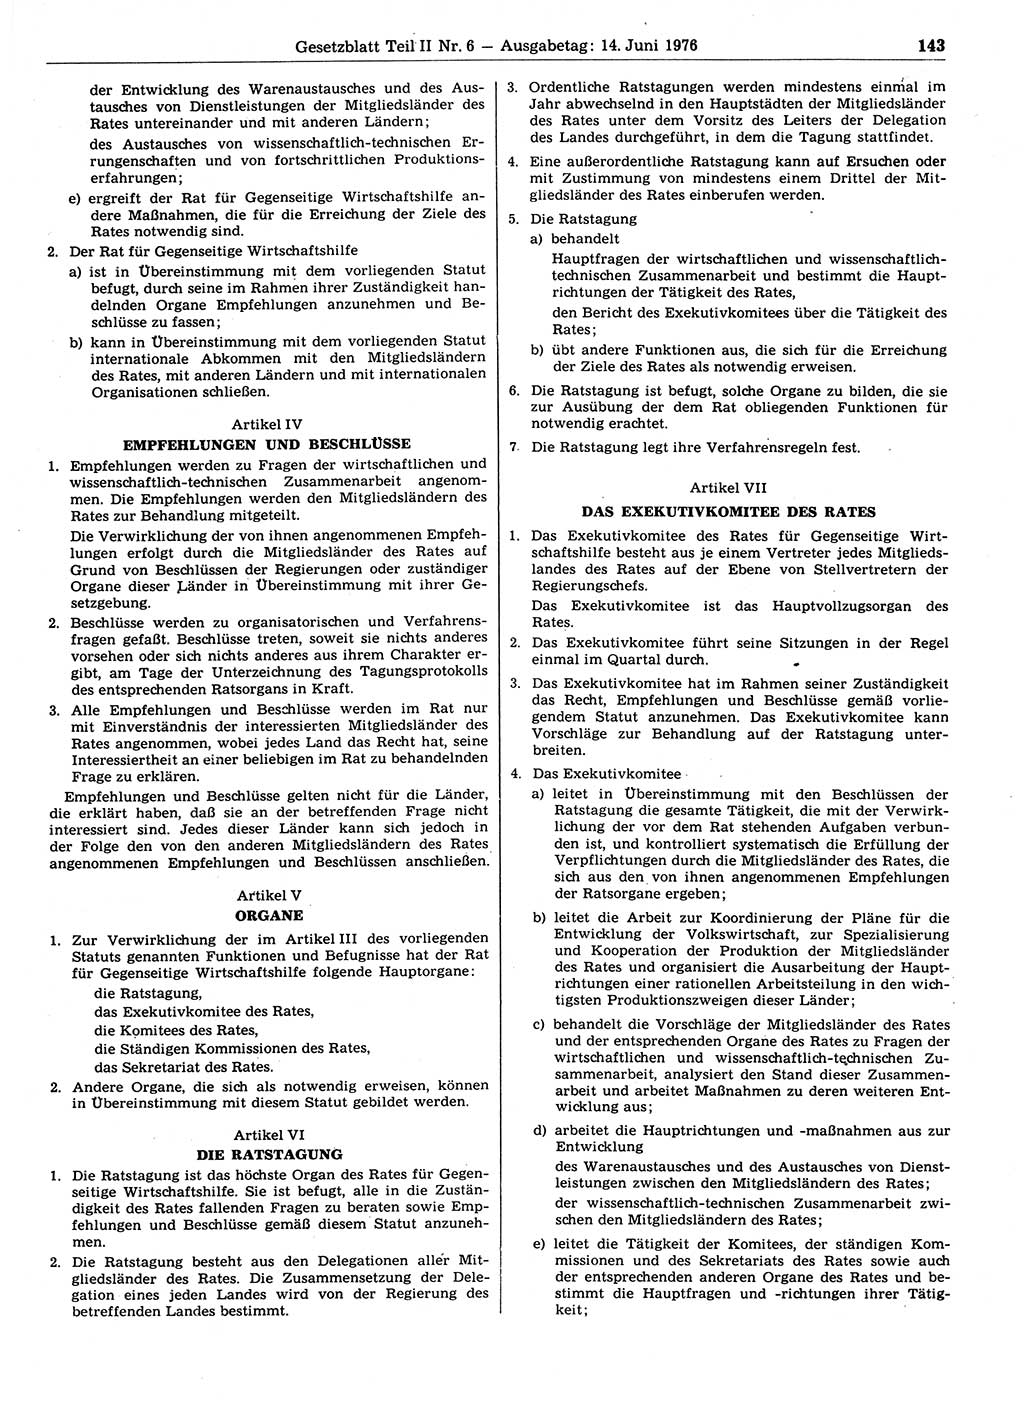 Gesetzblatt (GBl.) der Deutschen Demokratischen Republik (DDR) Teil ⅠⅠ 1976, Seite 143 (GBl. DDR ⅠⅠ 1976, S. 143)